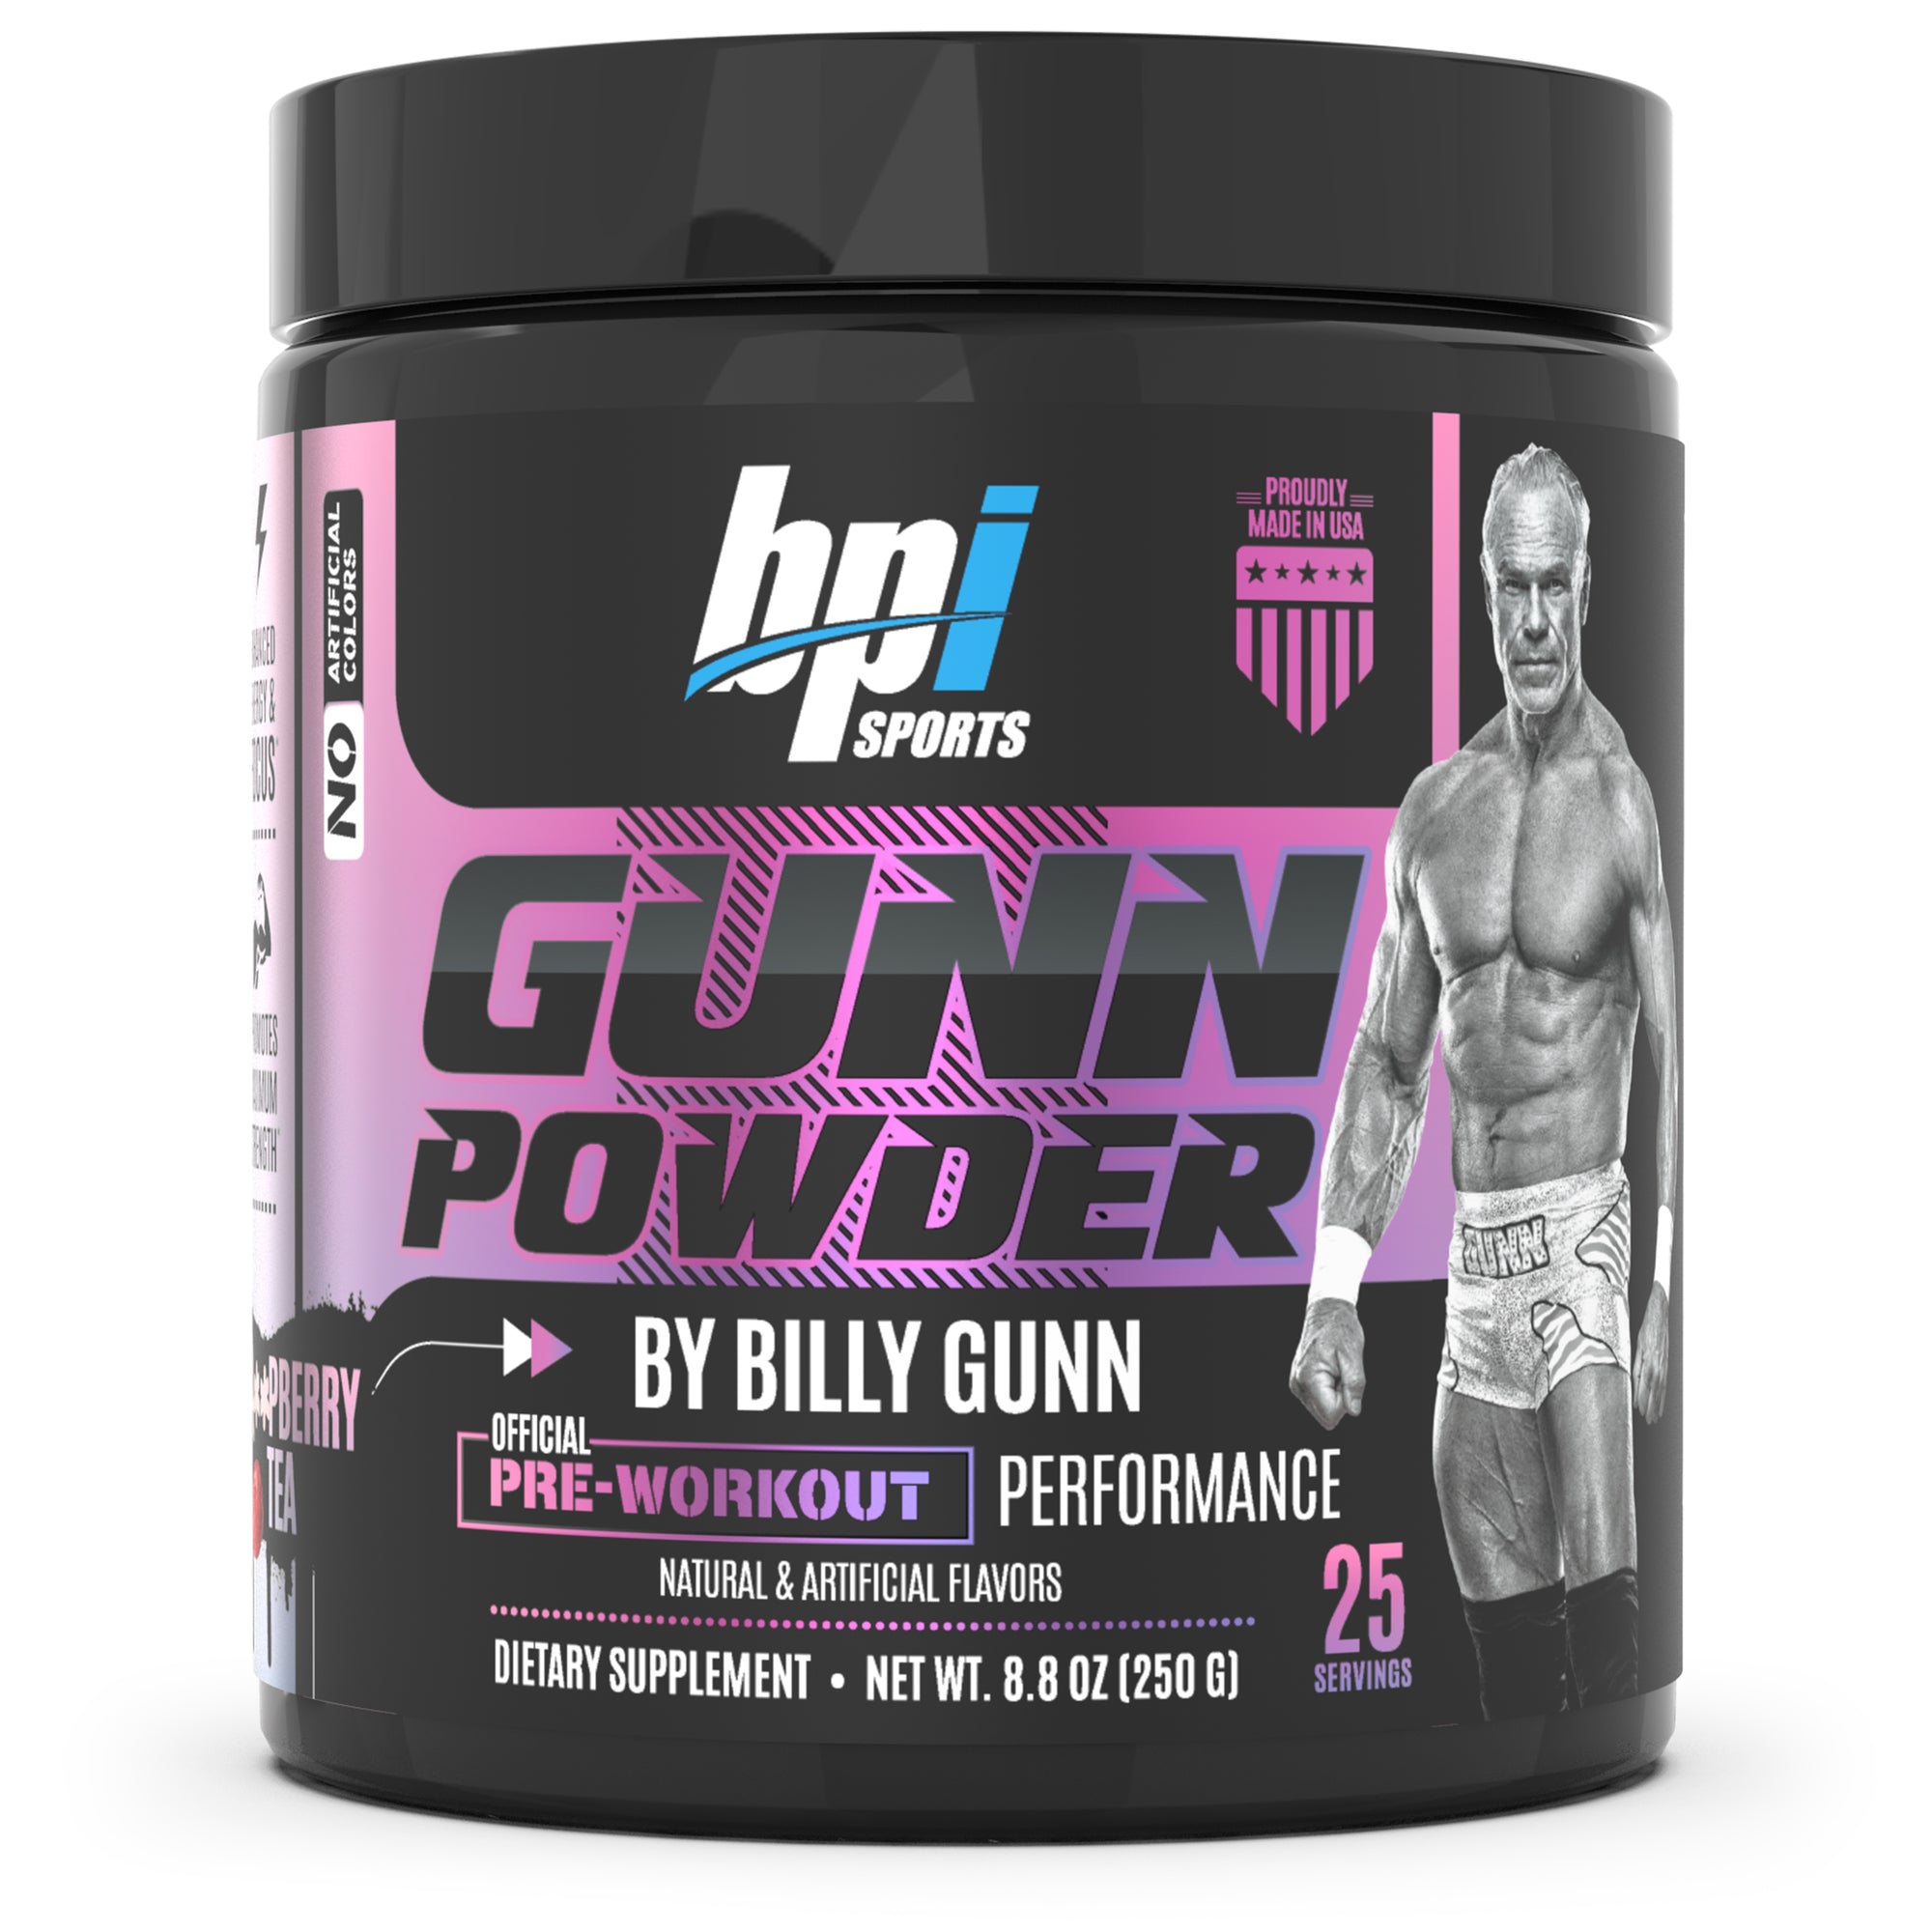 Rasspberry Tea Gunn Powder by Billy Gunn Container. 25 servings Net weight 7.76 ounces / 220 grams. Official pre-workout performance